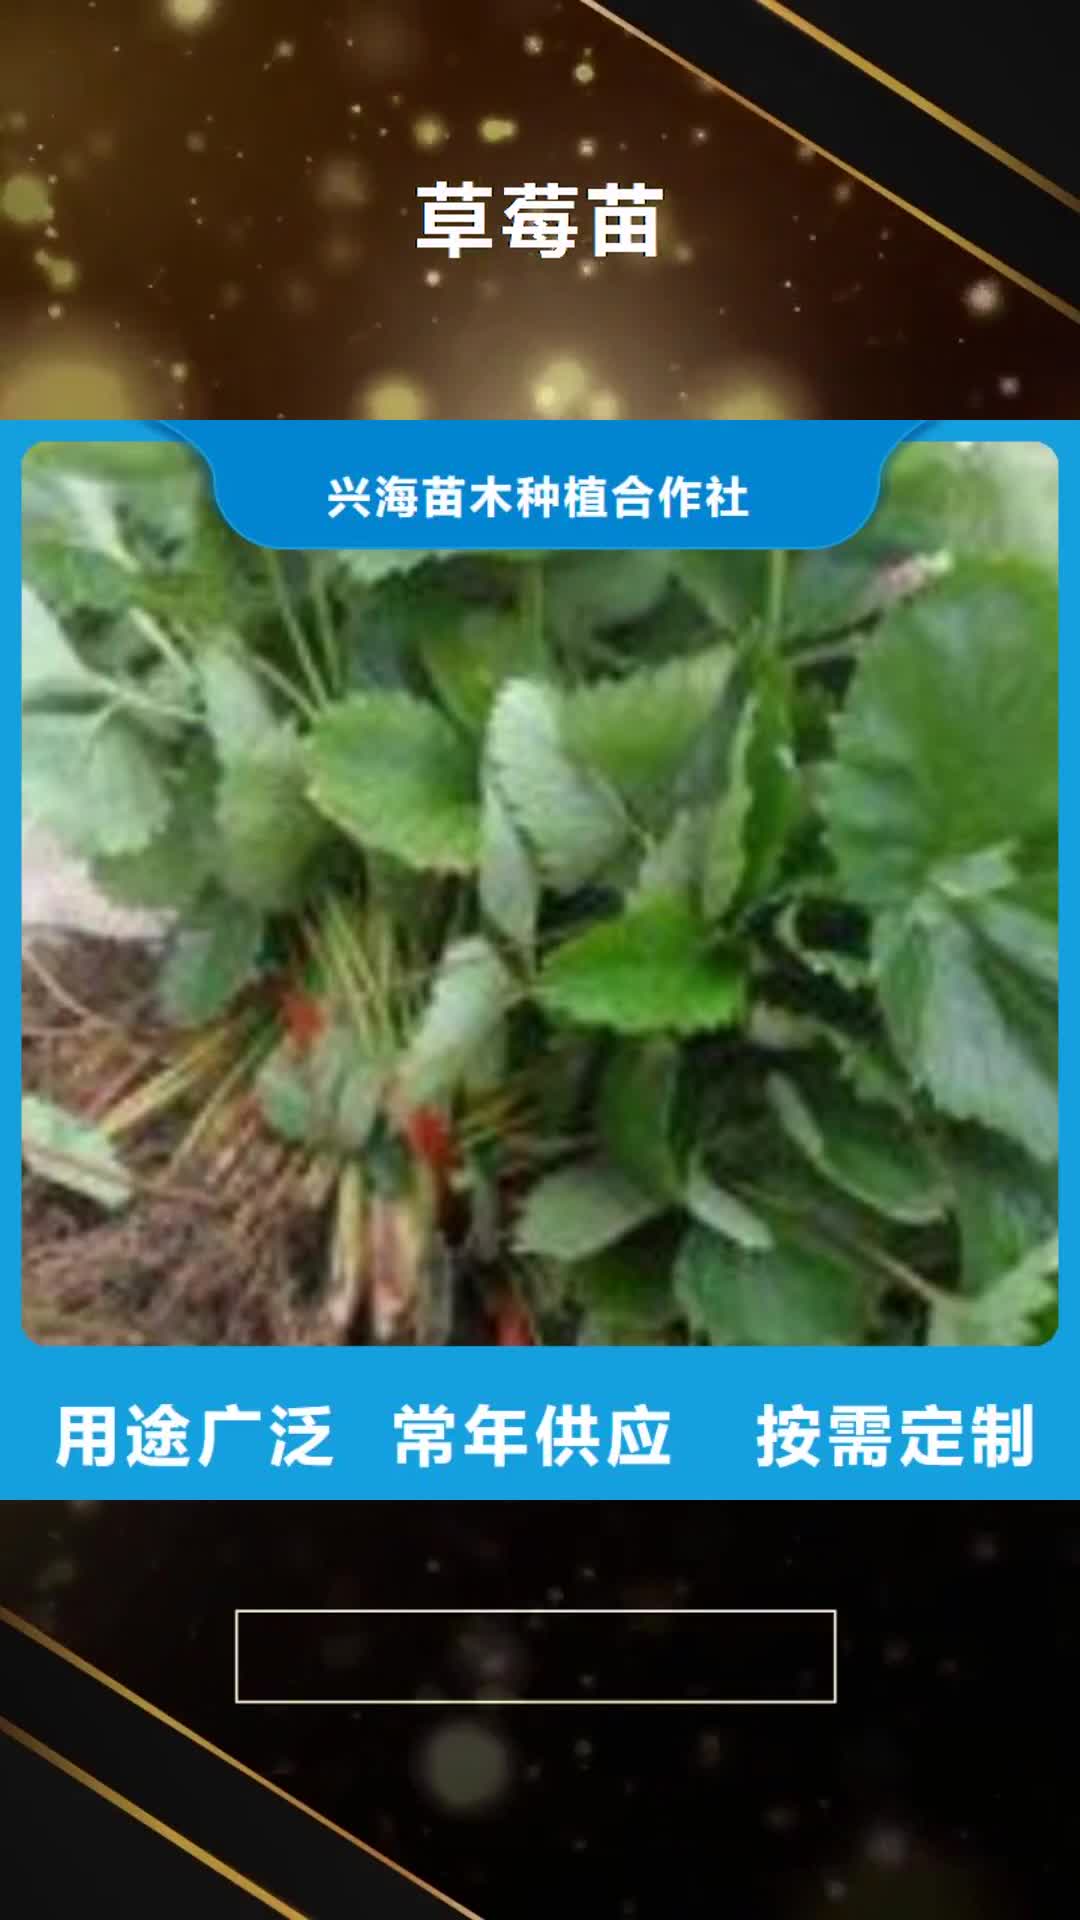 哈尔滨 草莓苗,【花椒苗】厂家拥有先进的设备